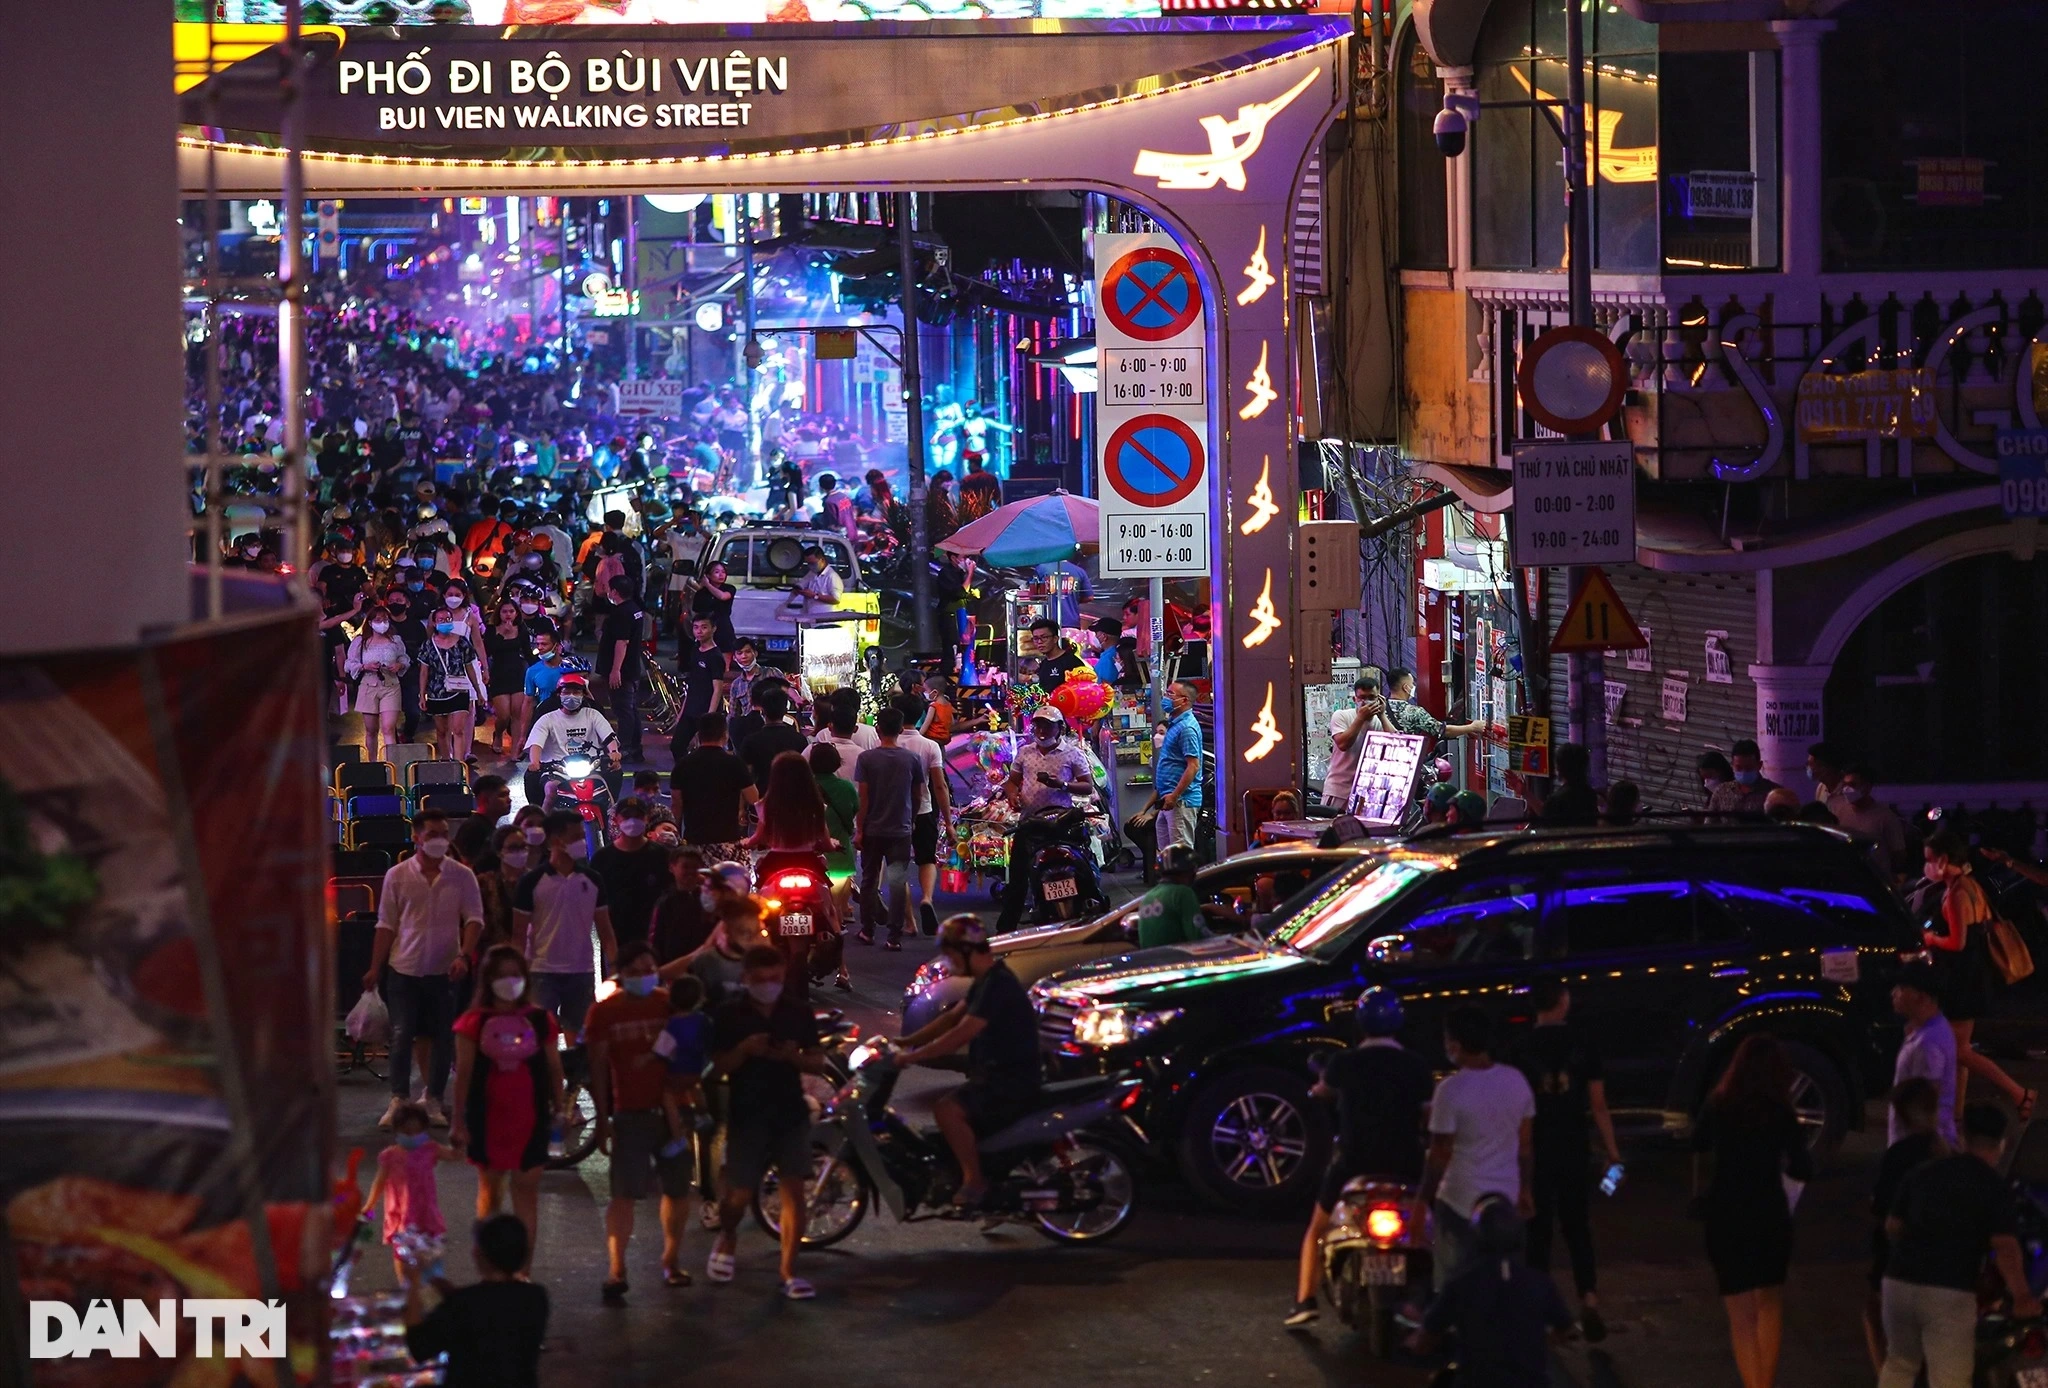 Việt Nam có nên mở những thành phố không ngủ để hút khách tiêu tiền? - 2